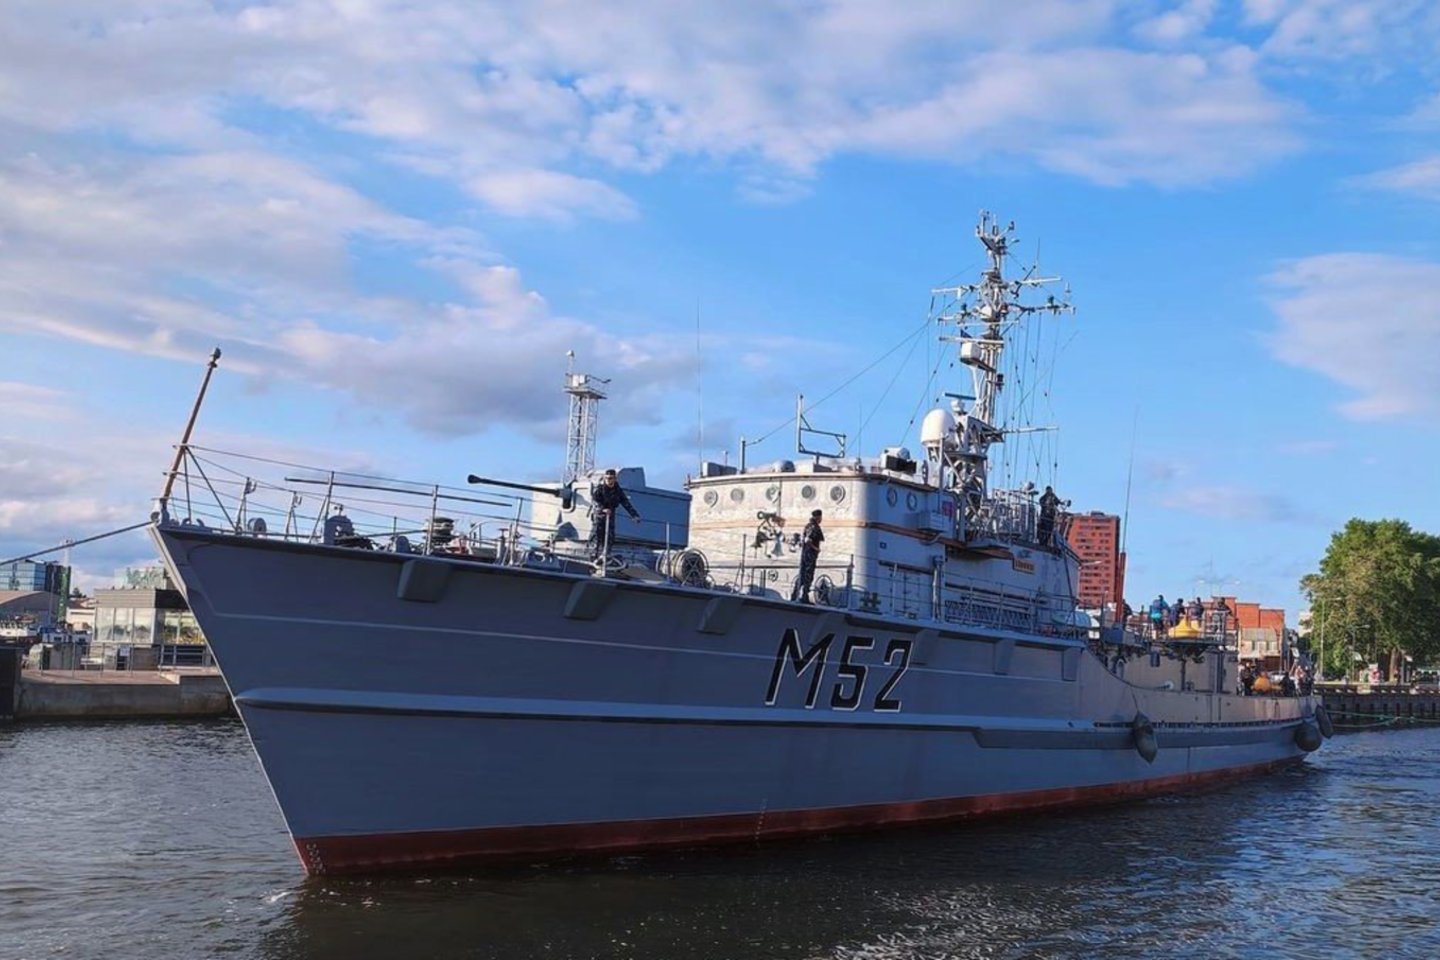  Buvęs Karinių jūrų pajėgų laivas „Sūduvis“ Danės upės krantinėje šalia Pilies tilto buvo pastatytas liepos pradžioje. <br> LJM nuotr.